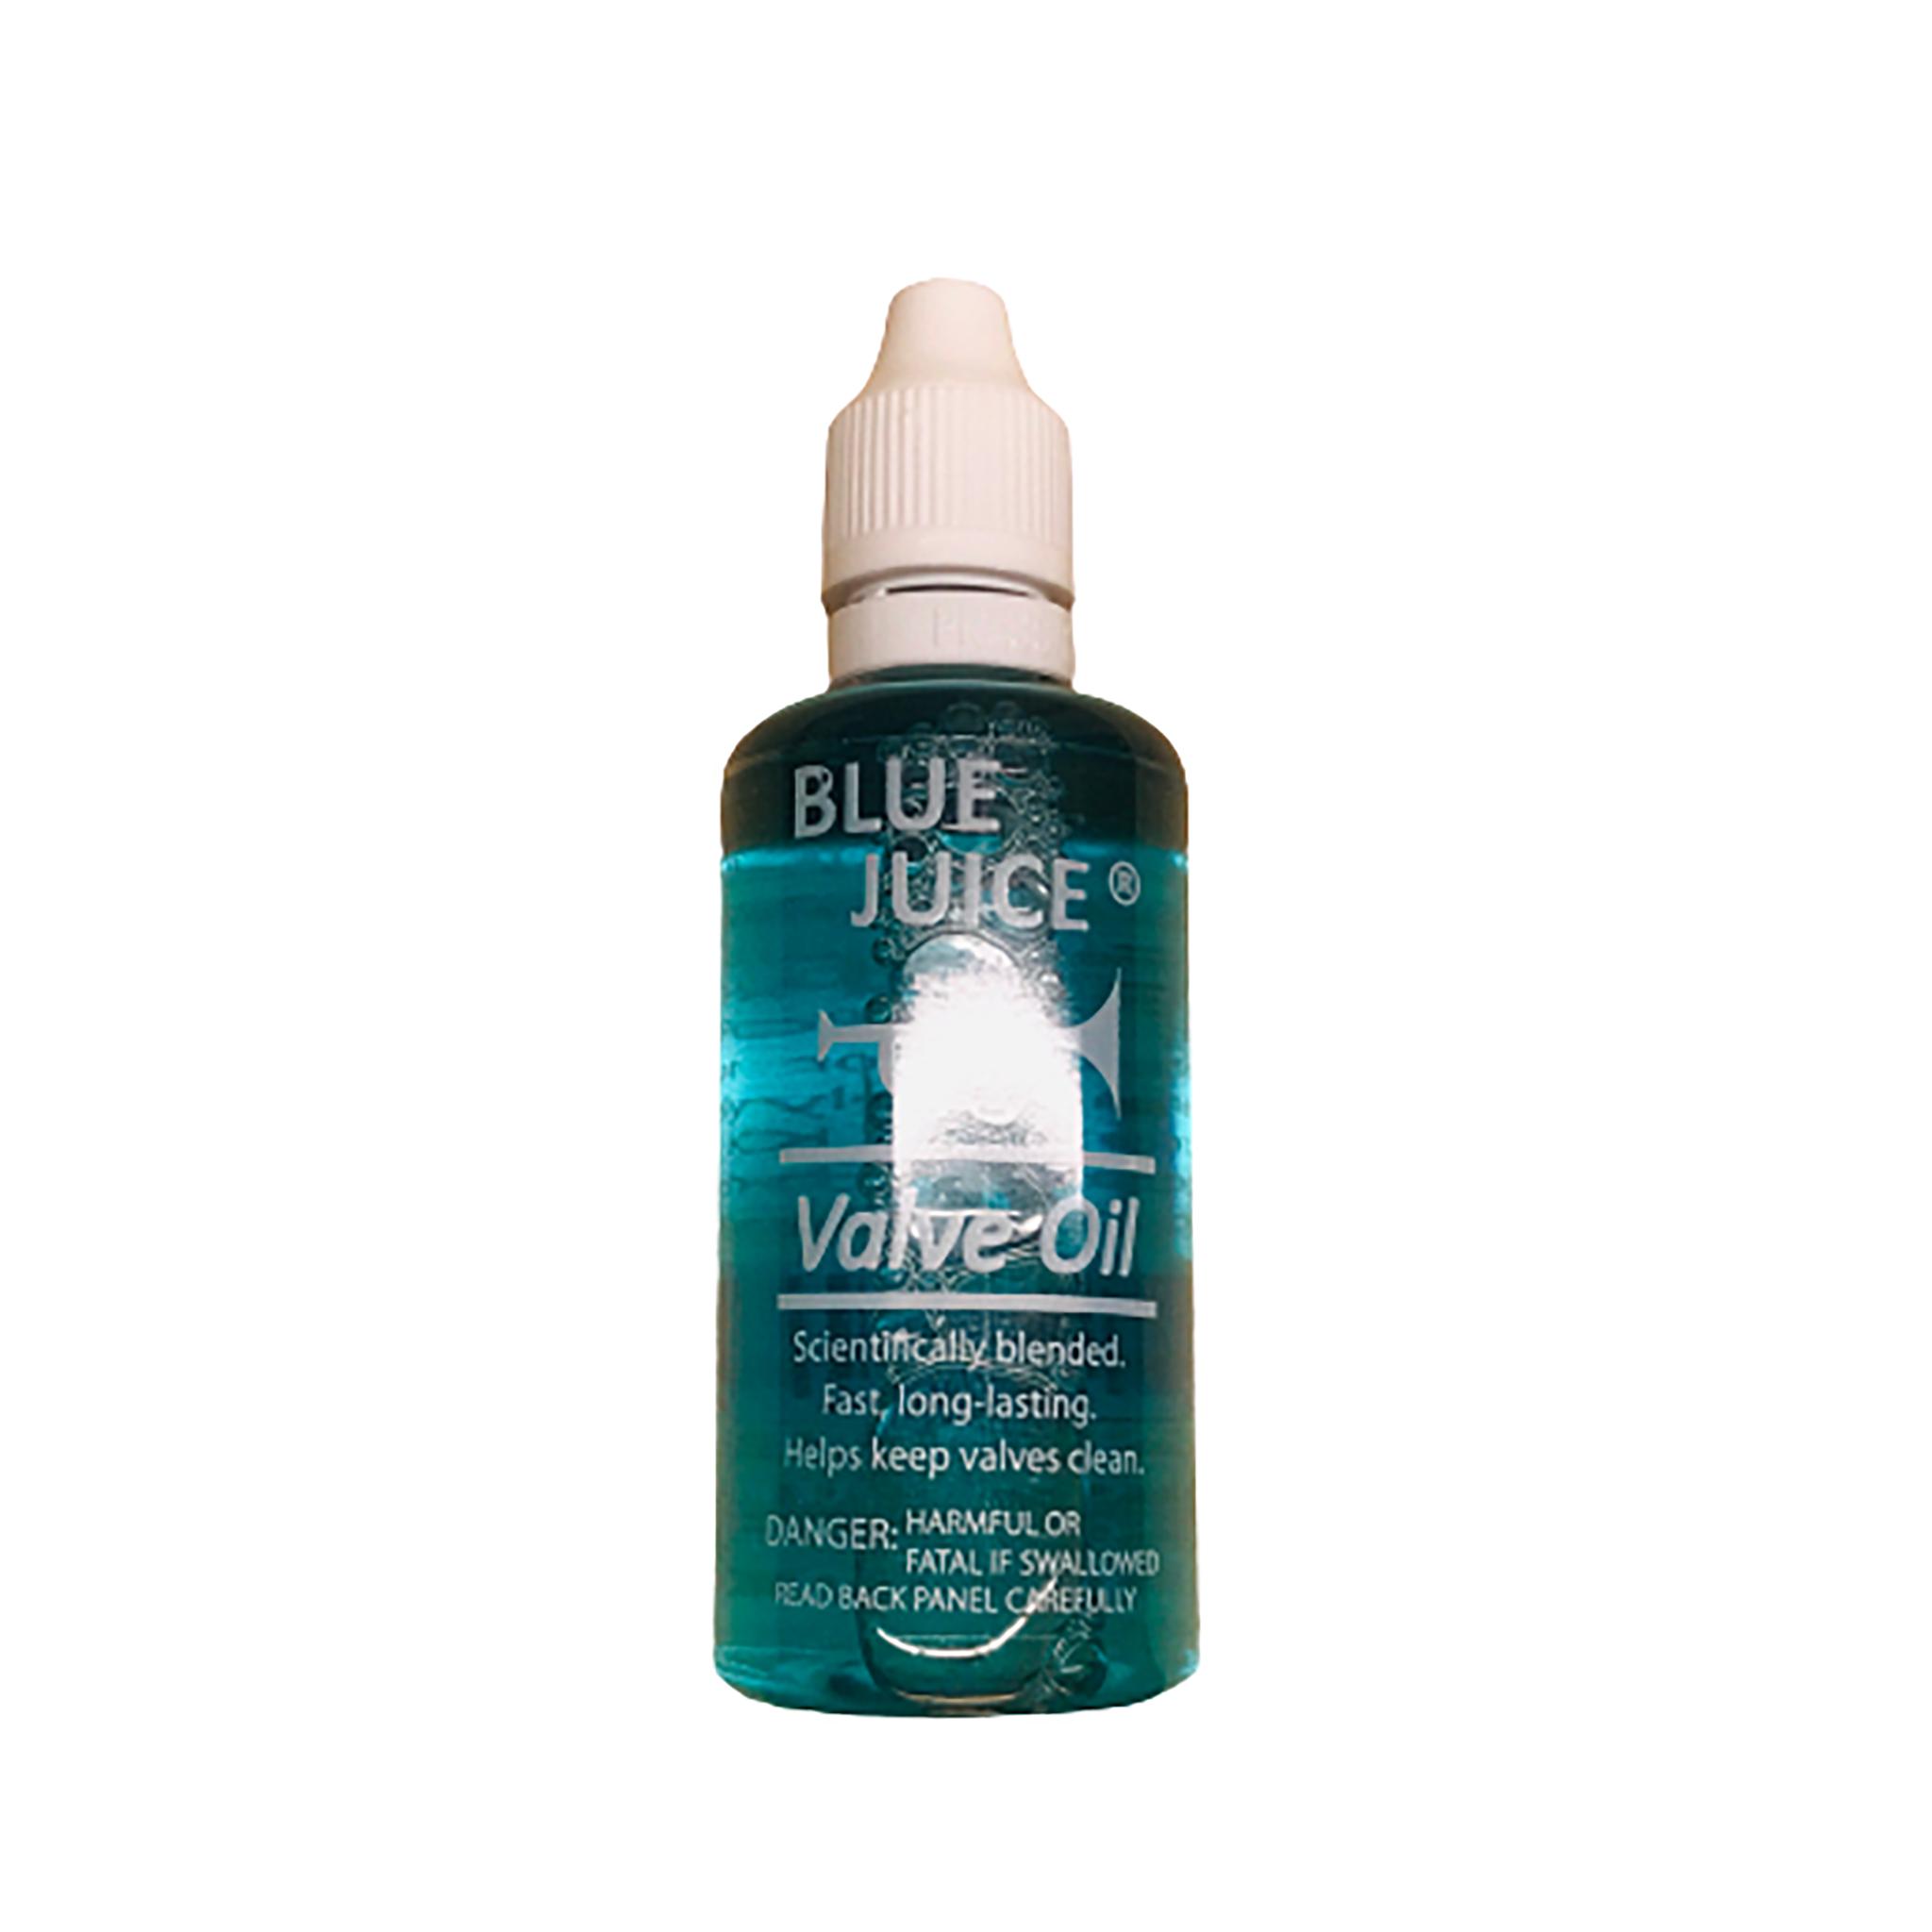 Blue Juice Valve Oil Fast Action 2 oz Trumpet Green petroleum product